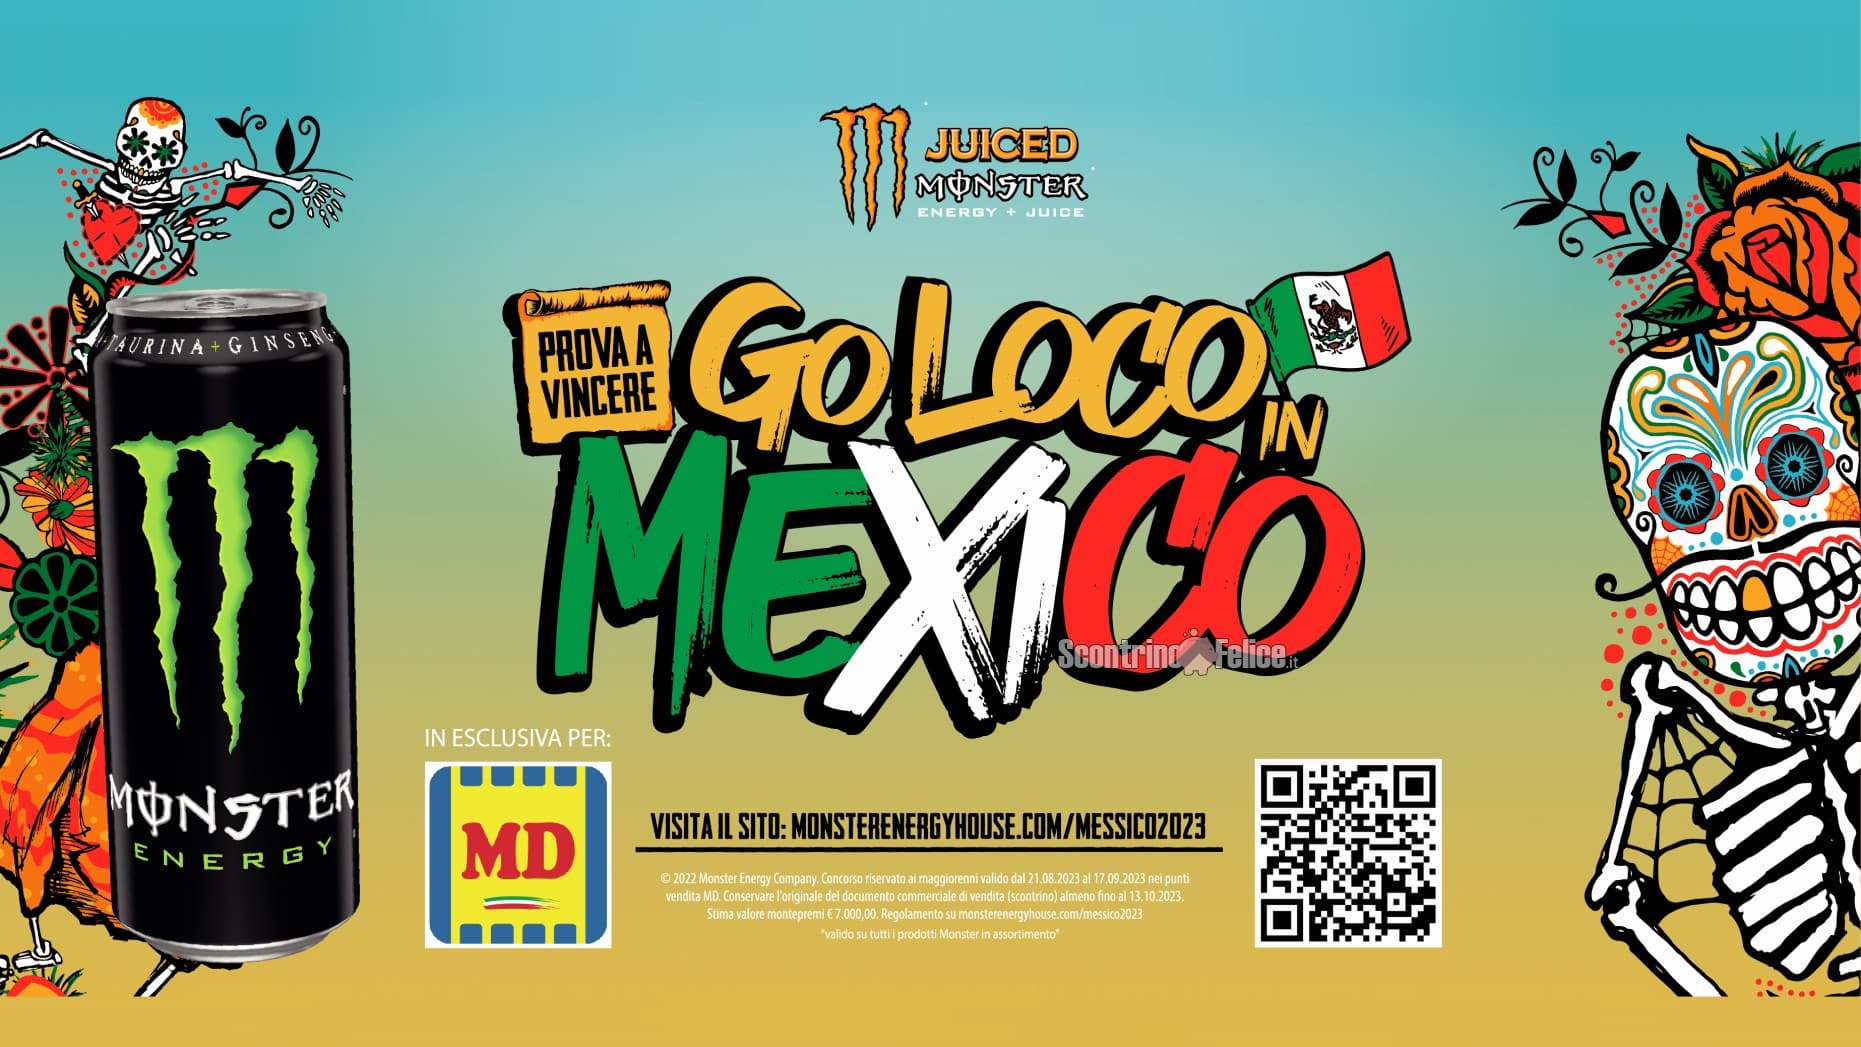 Concorso Monster da MD "Go Loco in Mexico": vinci 1 viaggio in Messico